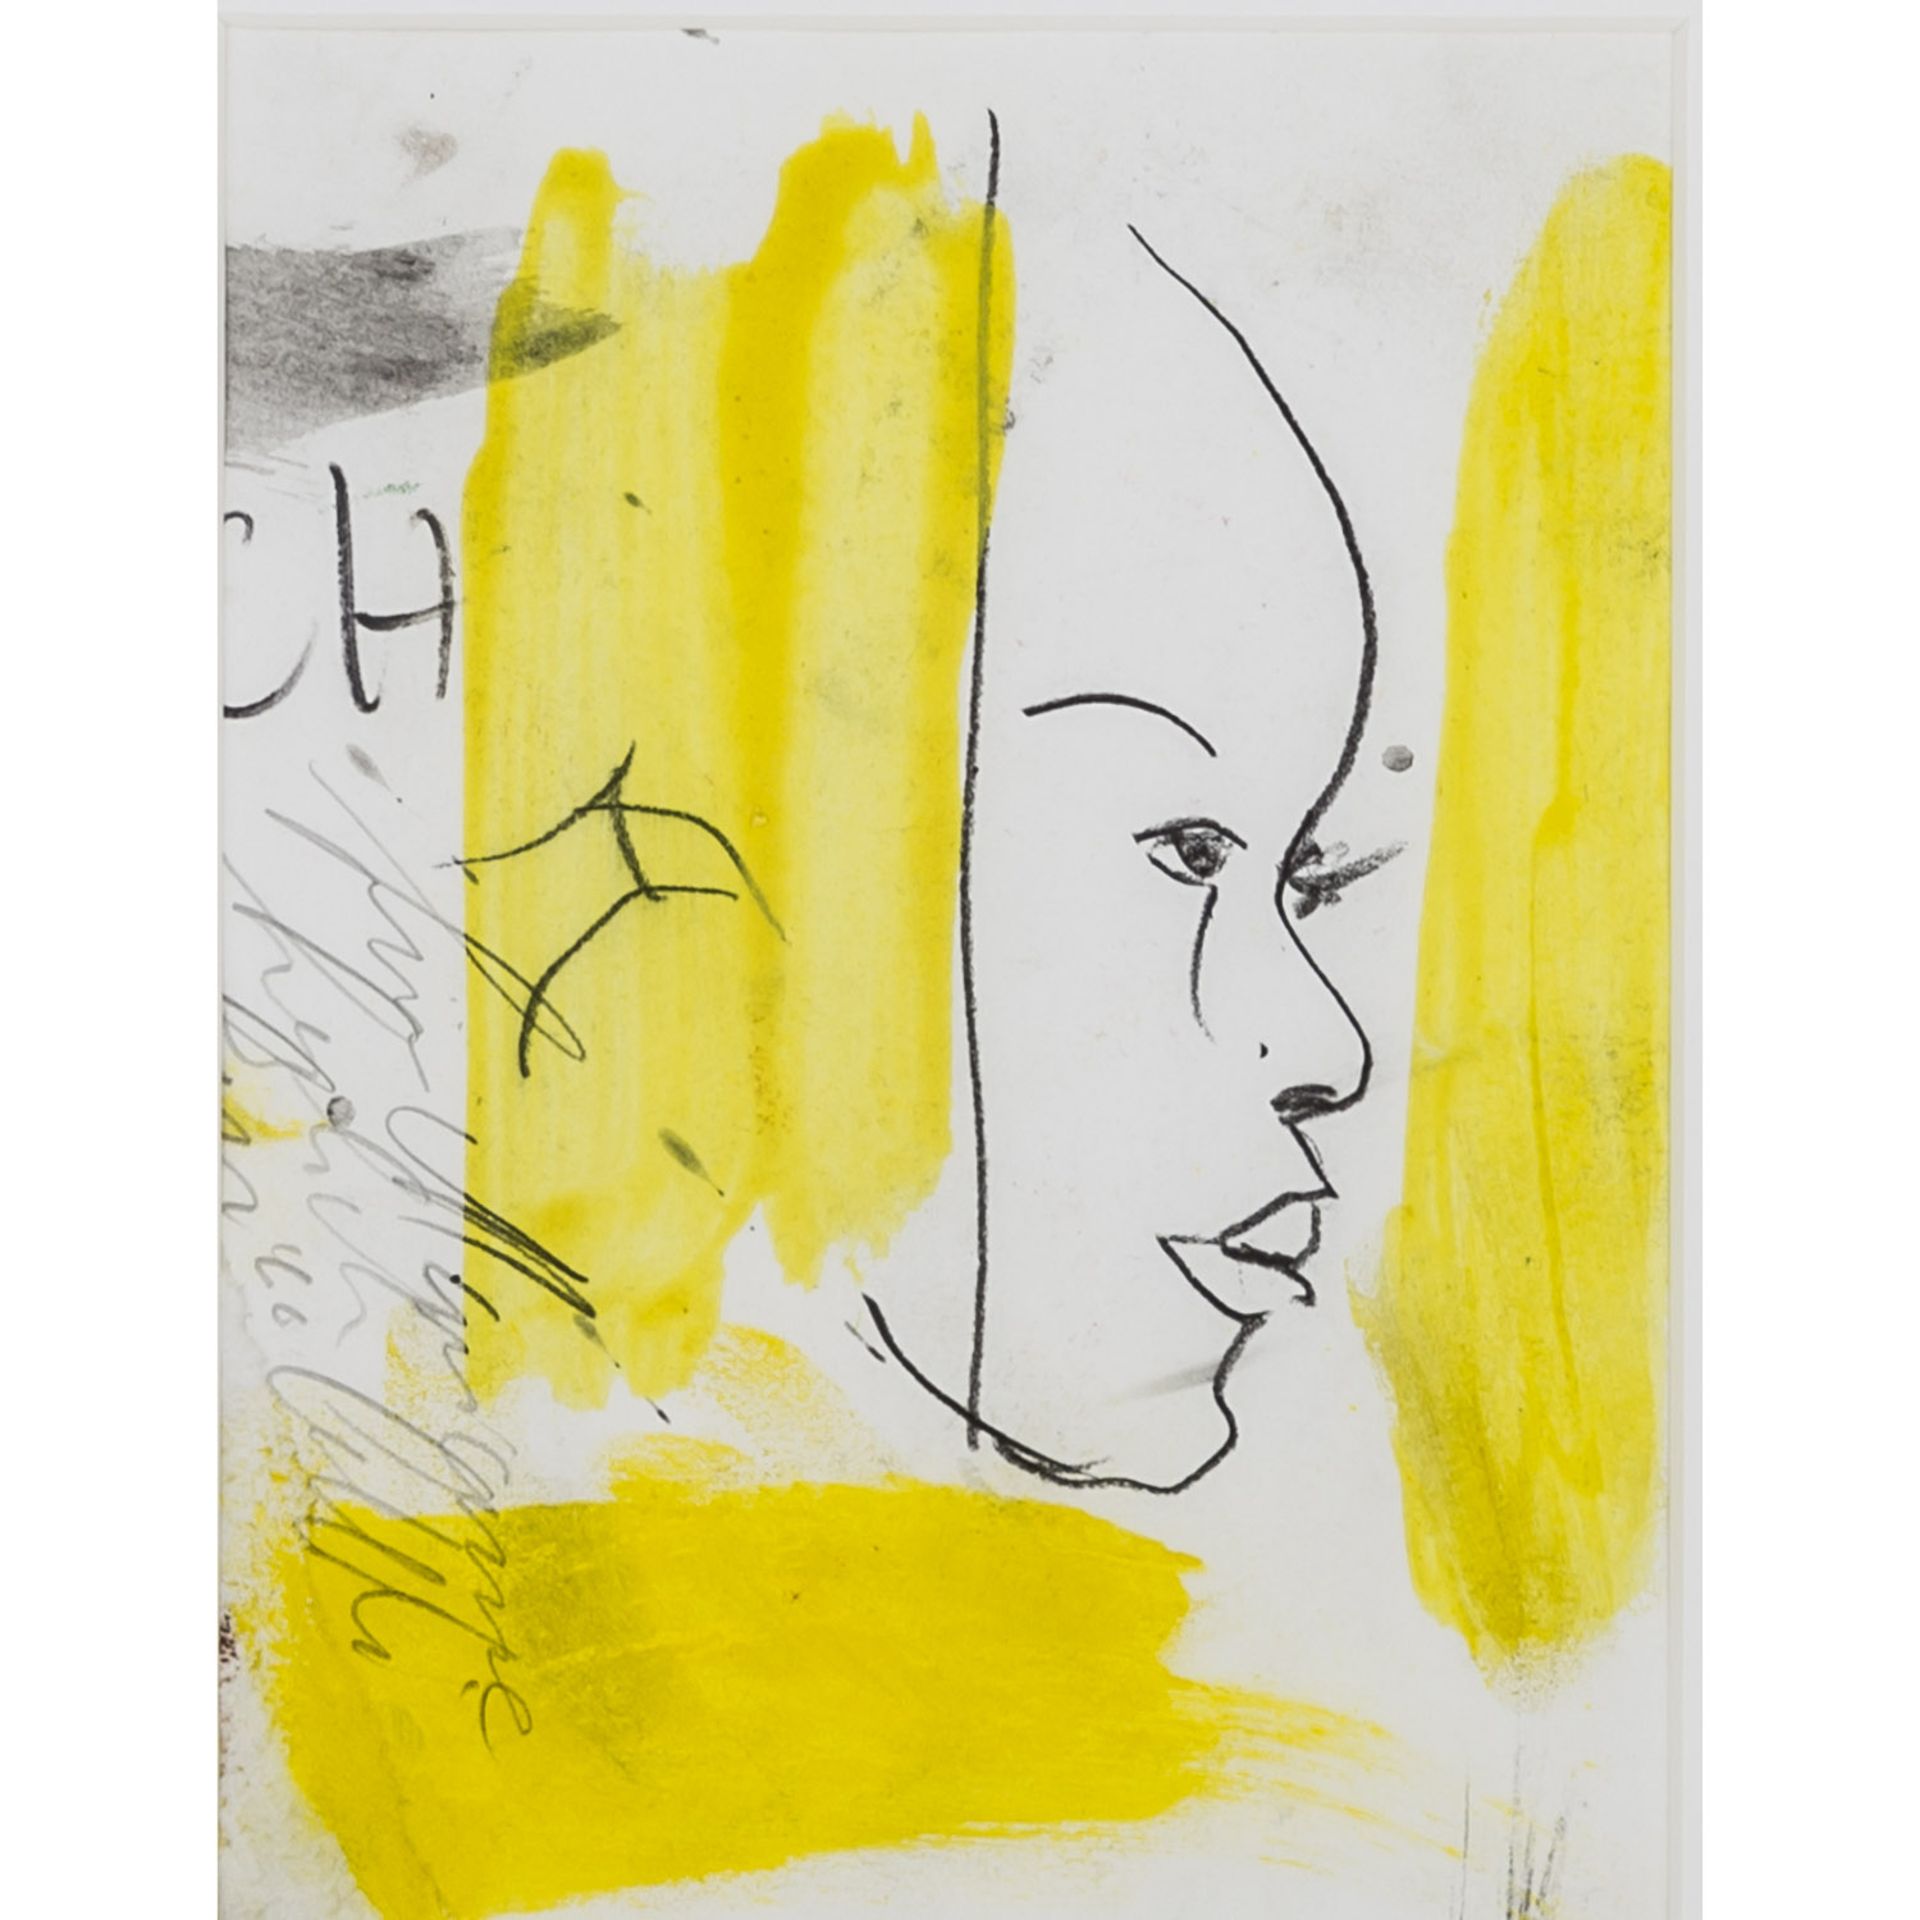 CASTELLI, LUCIANO (geb. 1951), "Frauengesicht im Profil",zwischen gelben Farbfeldern, Mischtechnik/